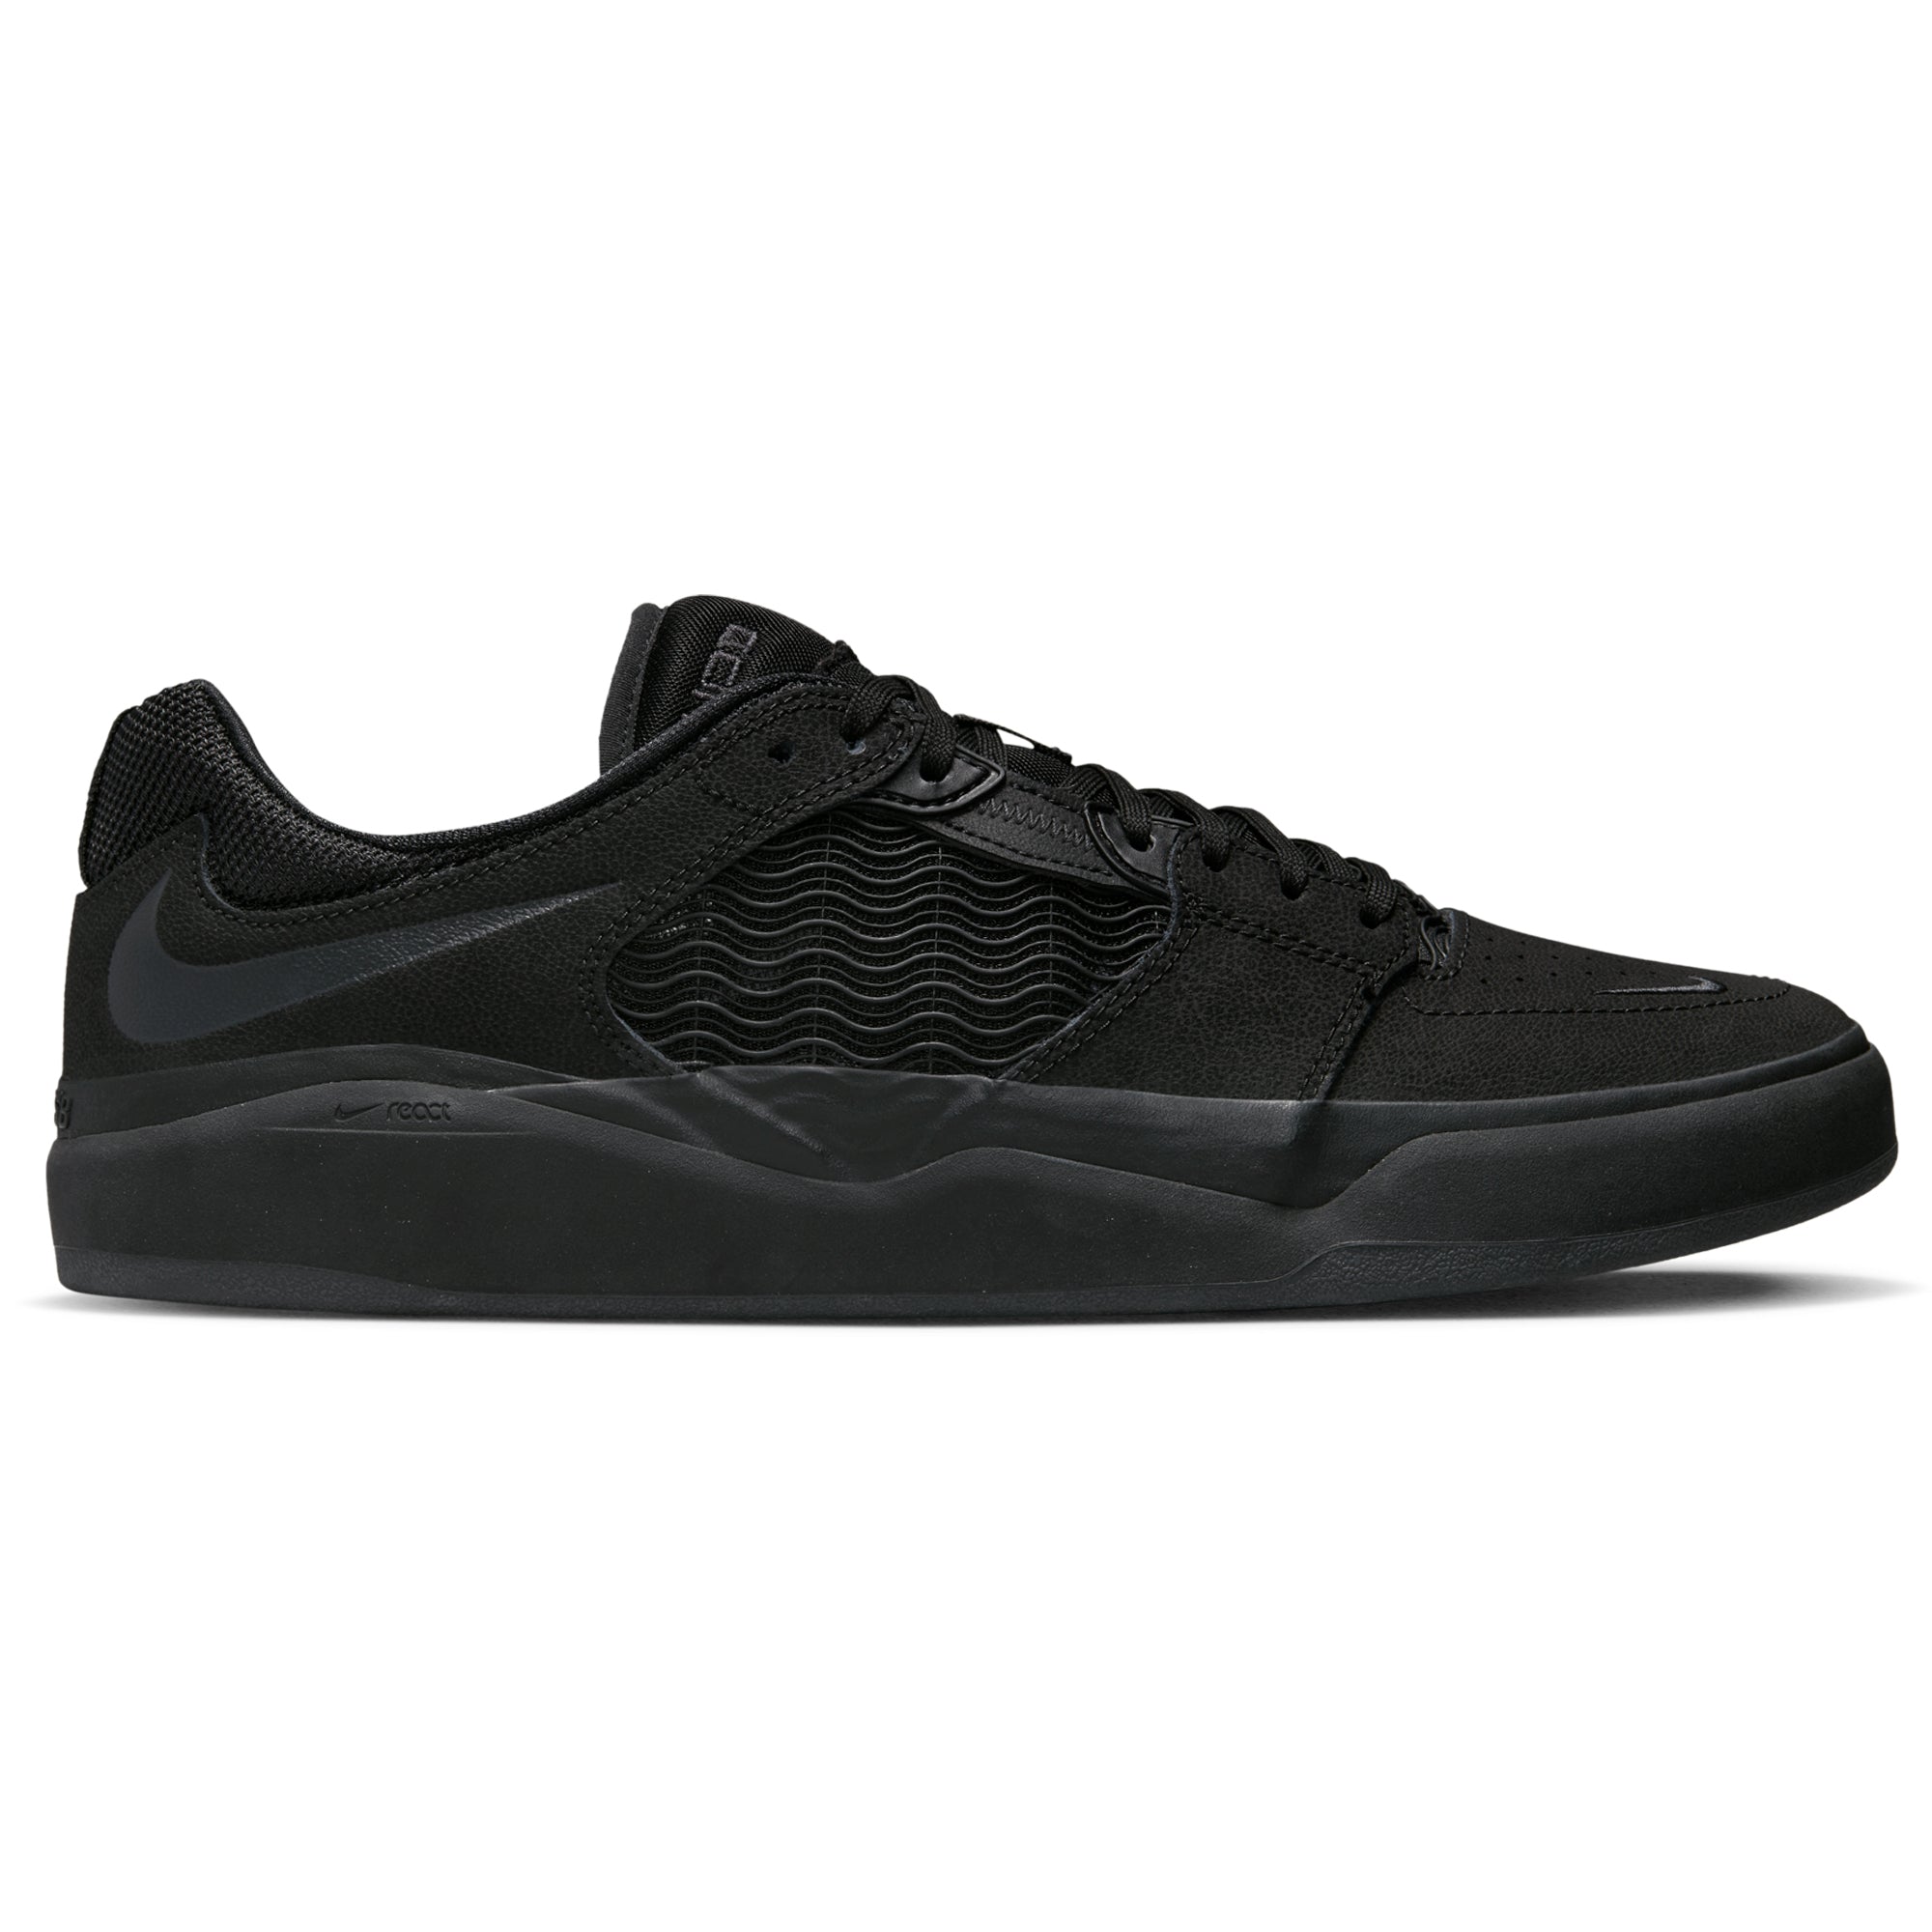 Nike SB Ishod Premium Pro Shoe - Black/Black-Black